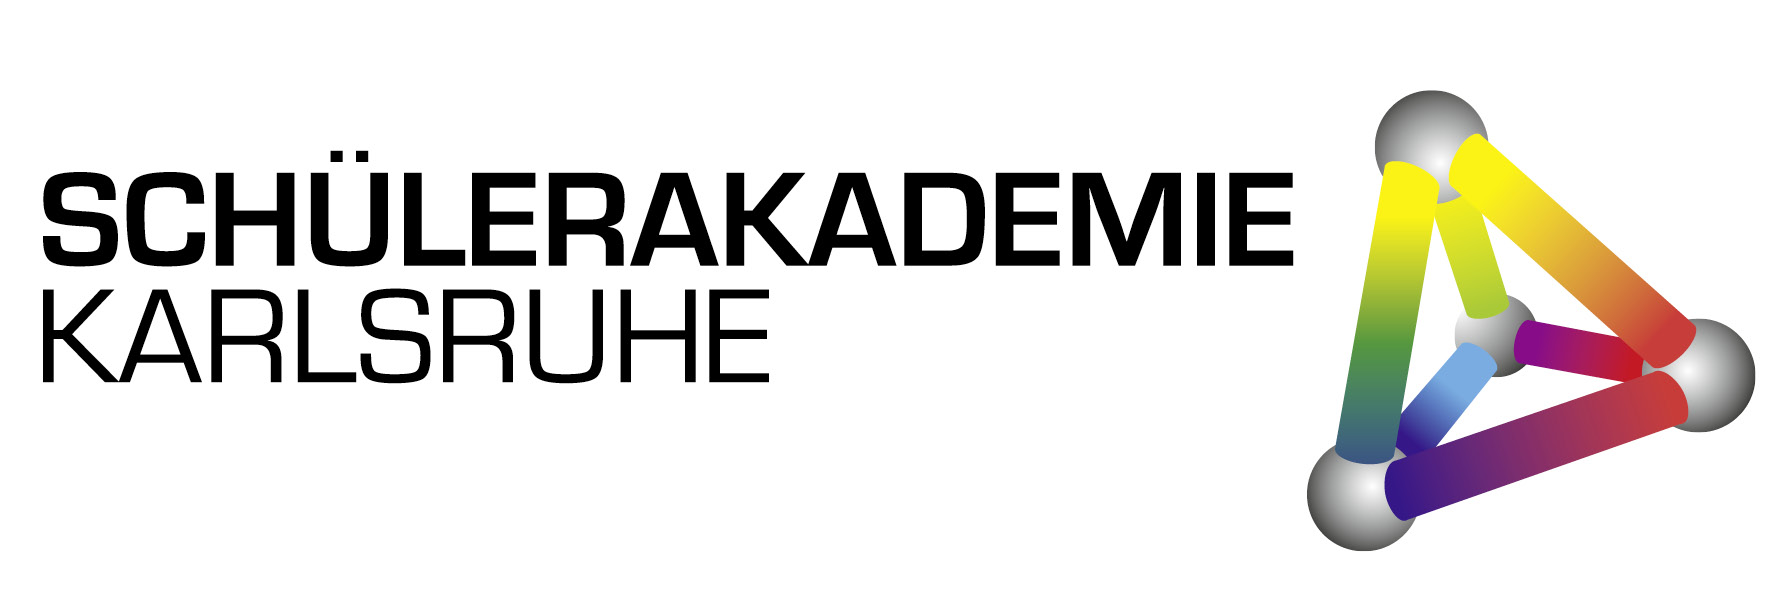 Zu sehen ist das Logo der Schülerakademie Karlsruhe.